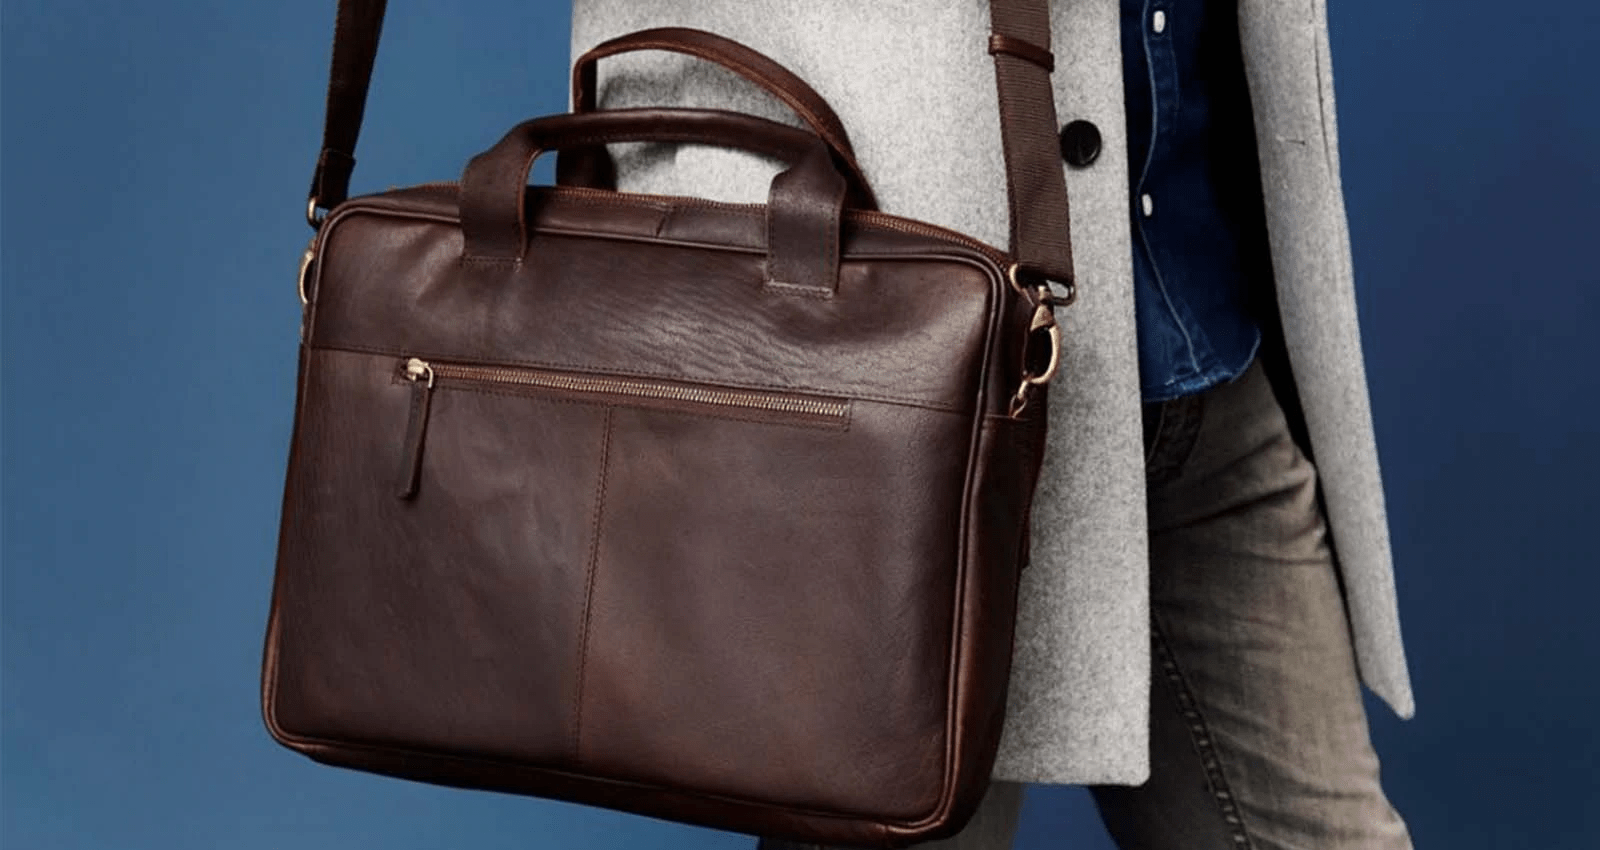 Men's Messenger Bag Guide - How to Choose The Right Shoulder Bag